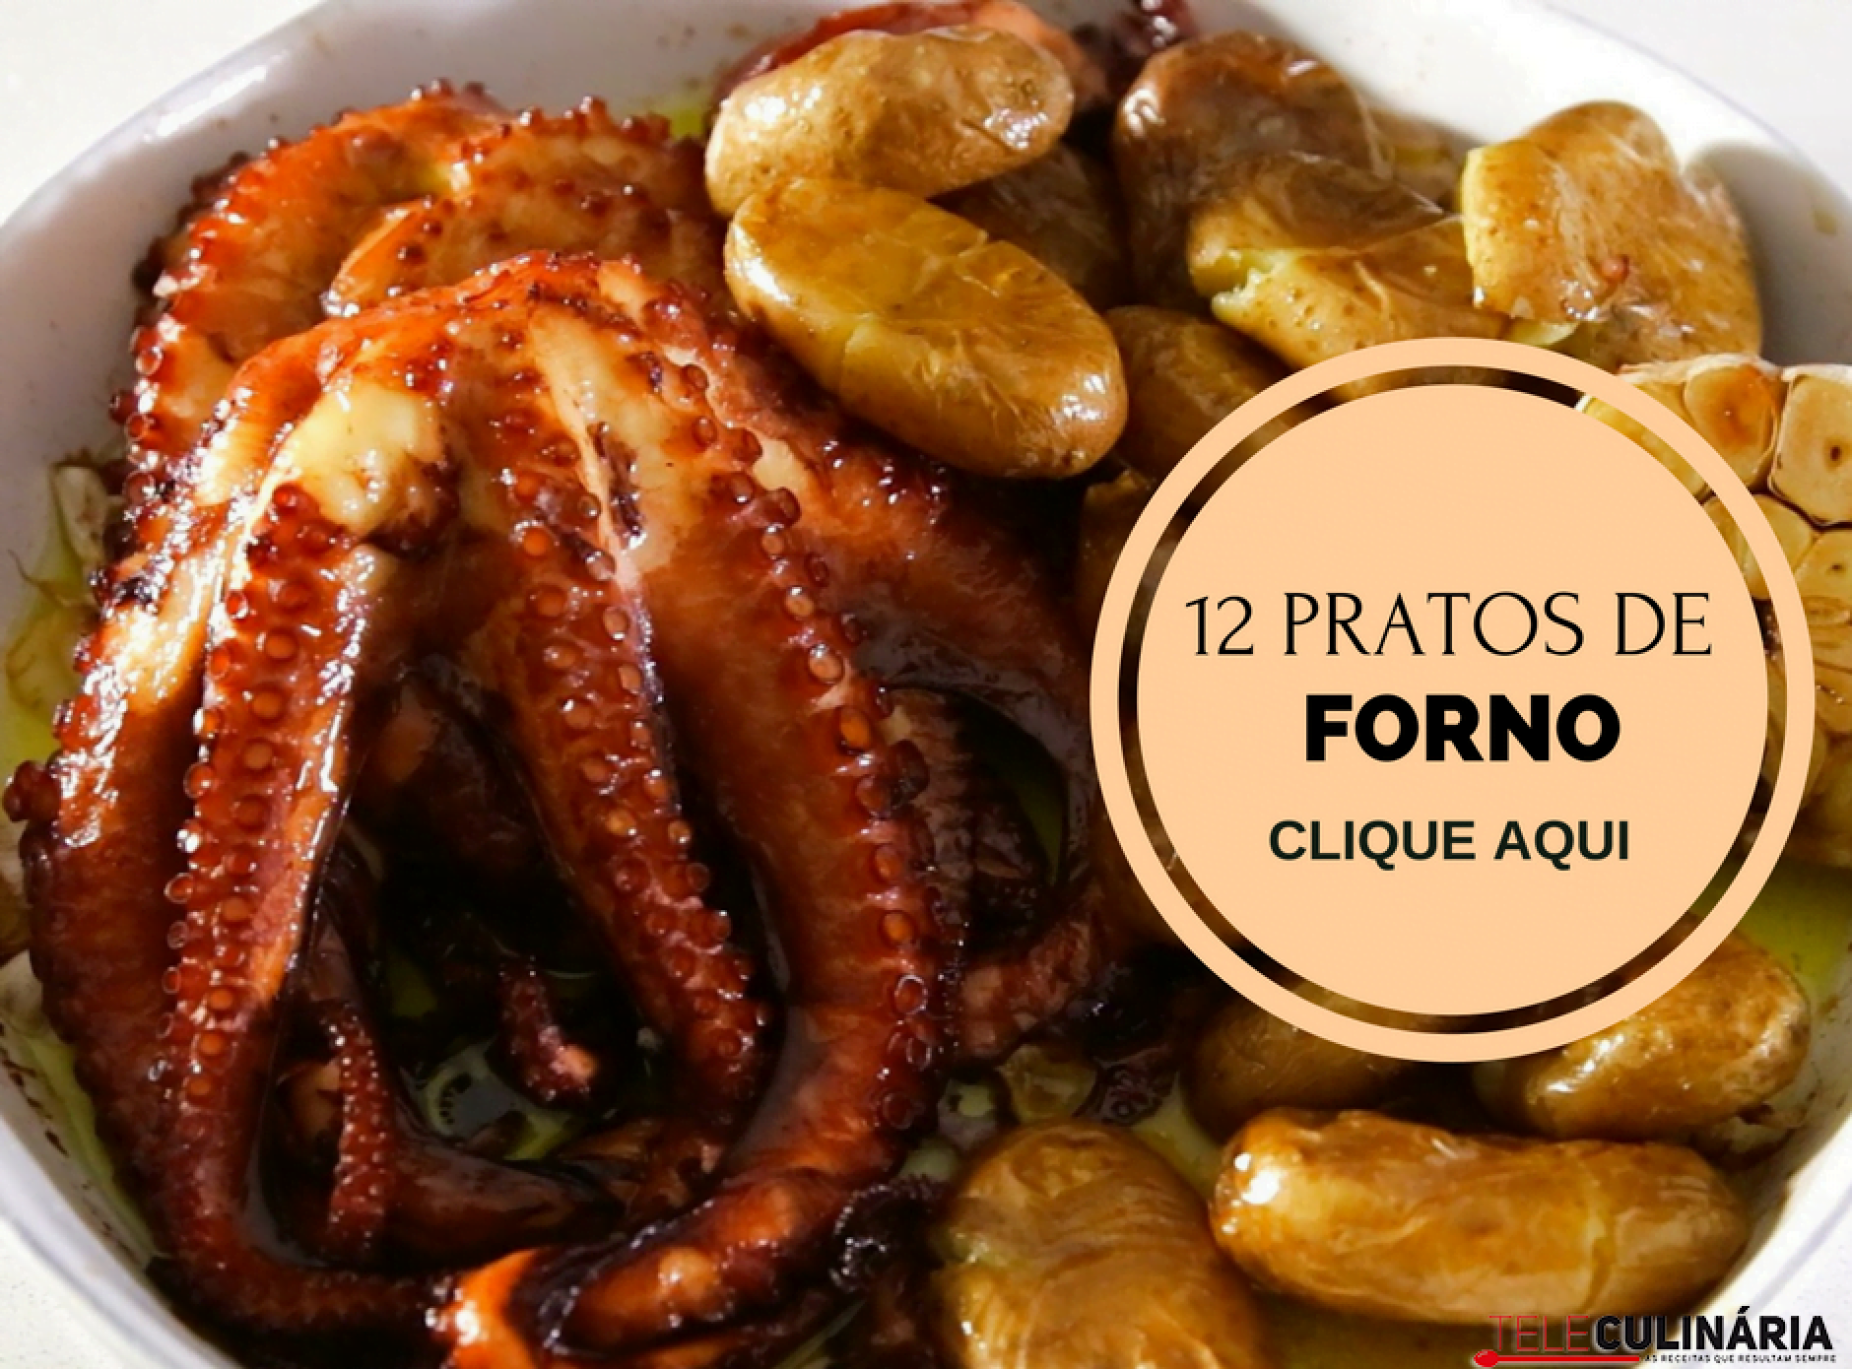 12 pratos de forno portugueses